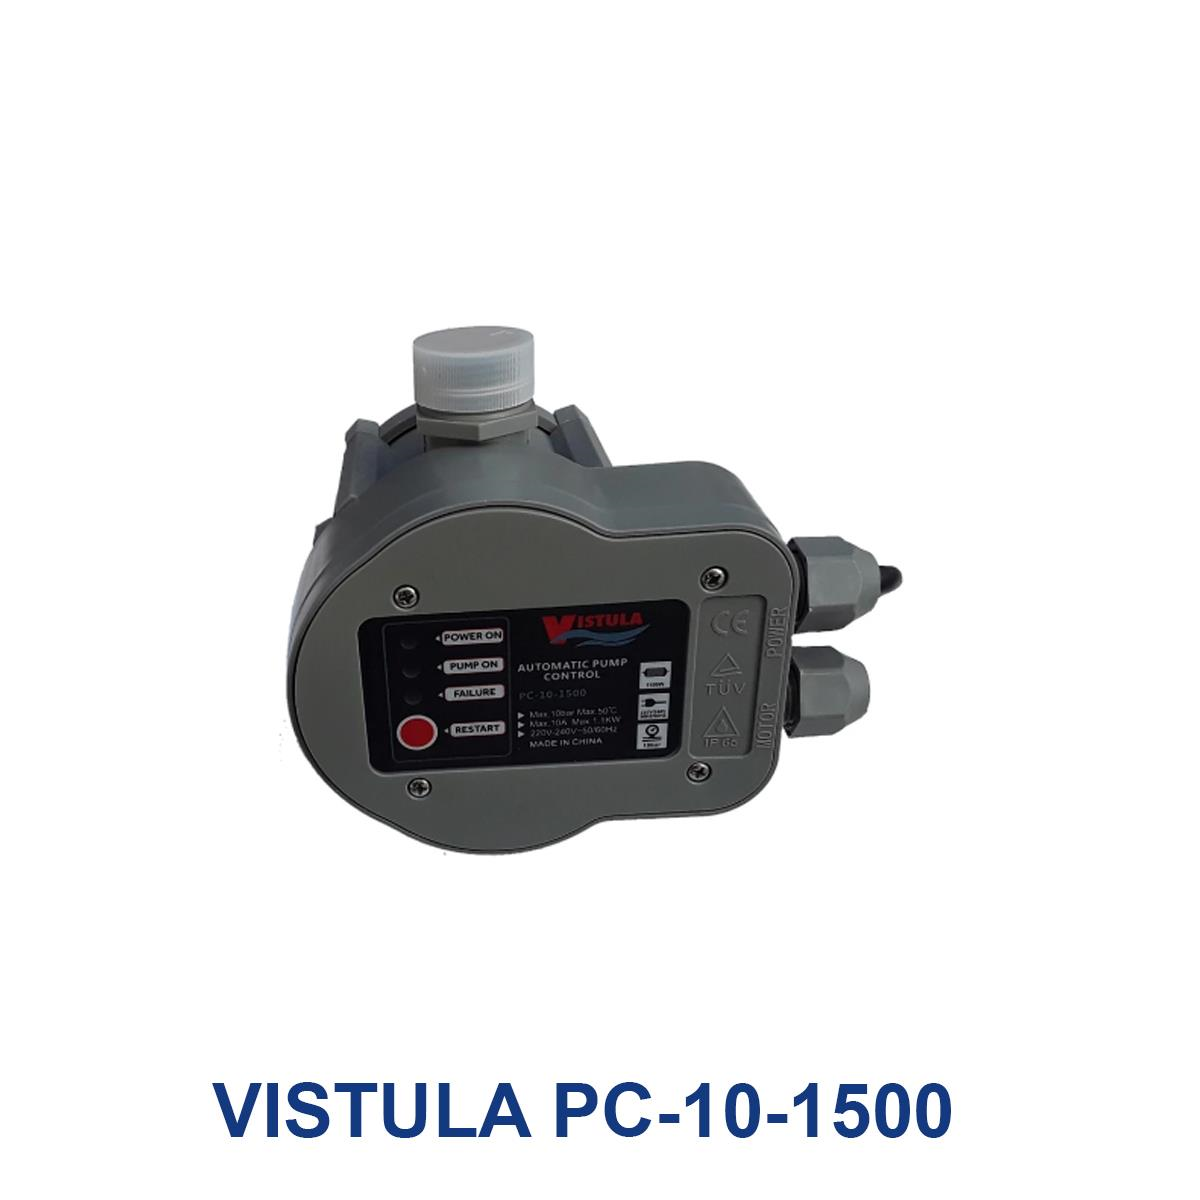 VISTULA-PC-10-1500